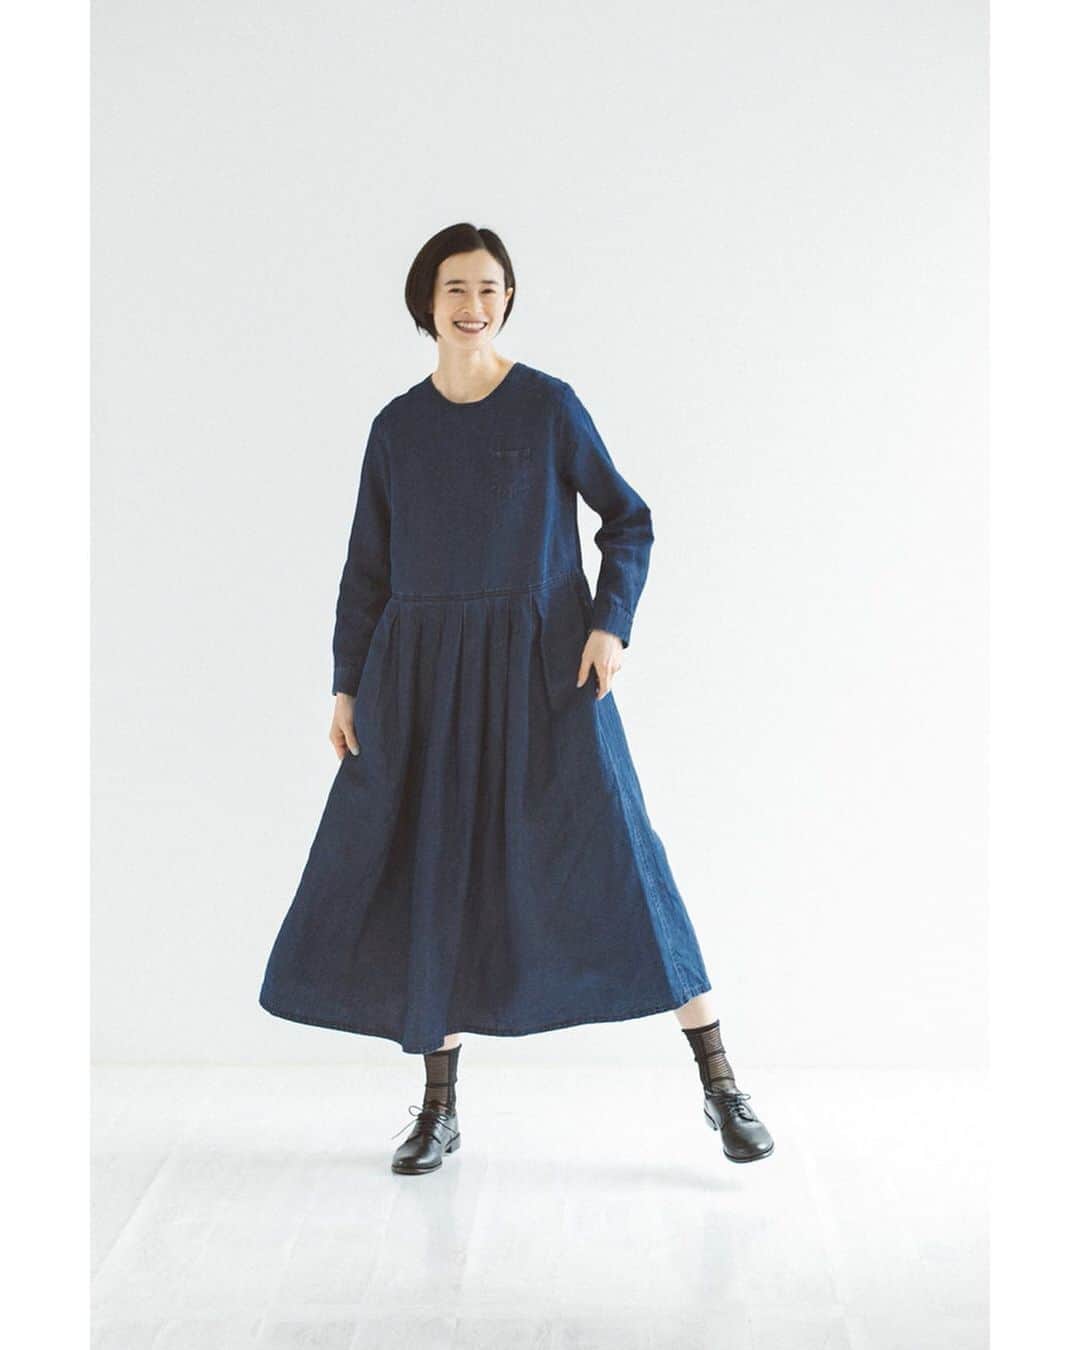 ナチュランさんのインスタグラム写真 - (ナチュランInstagram)「女性らしさと洗練された雰囲気の服が好評の「s.t.closet frabjous」より、ナイチンゲールワンピースをはじめとする、美しく上品なデニムの着こなしをご紹介します。﻿ ﻿ ﻿ -----------﻿ ■コットンリネンデニム　ナイチンゲール2WAYワンピース［RIO-2A45-1628-A］﻿ ワンピースとしても羽織りとしても着ていただける、コットンリネンのデニム生地を使用したナイチンゲールワンピース。リネン混デニムは、特有のやわらかさがあり、袖をロールアップしてもごわつきません。どんな着こなしにもしっくりとくるちょうどいい丈で、オールシーズン活躍してくれるアイテムです。﻿ ﻿ ﻿ -----------﻿ ■袖口リブ　プルオーバー［RIO-2A45-1627-B］﻿ ■SUNNYDRY　コットン　ヨークパンツ［RIO-2A45-1626-A］﻿ 細めのカラーが華奢な印象を与える、洗練されたデザインのプルオーバー。高密度に織り上げたコットンを使用し、ハリのある生地が上品さを漂わせます。裾脇のスリットと前後差のある着丈がさりげないアクセント。﻿ ヨーク下にタックをとって、ウエストまわりをすっきりと仕上げたパンツ。ほどよいハリのあるコットン素材でカジュアルな中にも品のよさが漂い、いつものトップスとシンプルに合わせるだけで存在感のある装いが完成します。﻿ ﻿ -----------﻿ ■コットンリネンデニム　フレアーパンツ［RIO-2A45-1624-A］﻿ ■SUNNYDRY　リネン　ドレスシャツ［RIO-2A45-1623-C］﻿ やわらかな風合いのコットンリネンのワイドキュロット。ゆったり余裕のある穿き心地でも、自然に広がる美しいフレアシルエットが上品な雰囲気を漂わせます。しっかりとしたデニム生地でロングシーズン穿いていただけます。﻿ カフス部分をざっくりとした風合いの綿麻素材に切り替えた涼し気なリネンシャツ。バックに贅沢にほどこされたギャザーが後ろ姿の可愛いアクセントになります。﻿ ﻿ ﻿ -----------﻿ ■コットンリネンデニム　タックワンピース［RIO-2A45-1625-A］﻿ ボリュームのあるシルエットが存在感のあるリネン混デニムワンピース。ウエストにぐるりと1周タックを入れたゆったりデザインで、軽やかな着心地で動きやすいのに綺麗な佇まいに。首元のすっきりとしたデザインとのバランスもよく、洗練された印象を与えてくれます。﻿ ﻿ ﻿ ﻿ ﻿ ------------------------------﻿ ▶️お買いものは写真内のタグをタップしてくださいね。またはプロフィールからもナチュランへリンクしています。→@natulan_official﻿ ﻿ ▶️写真内のタグは、販売中でも消えている場合がございます。ぜひ、ナチュランの検索窓から、注文番号又は商品名を、検索してみてくださいね。﻿ ﻿ ▶️プロフィール画面では、季節のおすすめ商品や、再入荷情報をご紹介しています。ぜひ、ご覧くださいませ。→@natulan_official﻿ ﻿ ----------- #lifewear #fashion #今日のコーデ #コーディネート #ファッション #ナチュラル #ナチュラン #natulan #日々の暮らし #暮らしを楽しむ #シンプルライフ #シンプルコーデ #大人女子 #大人コーデ #ナチュラルコーデ #コットンリネンデニム #デニムワンピース #前開きワンピース #ワンピースコーデ #ワンピース #プルオーバー #バルーンパンツ #パンツコーデ #白パンツ #フレアパンツ #リネンシャツ #タックワンピース #stclosetfrabjous #エスティクローゼットフラビシャス #natulan_official @rie__miyamoto__」8月27日 12時02分 - natulan_official